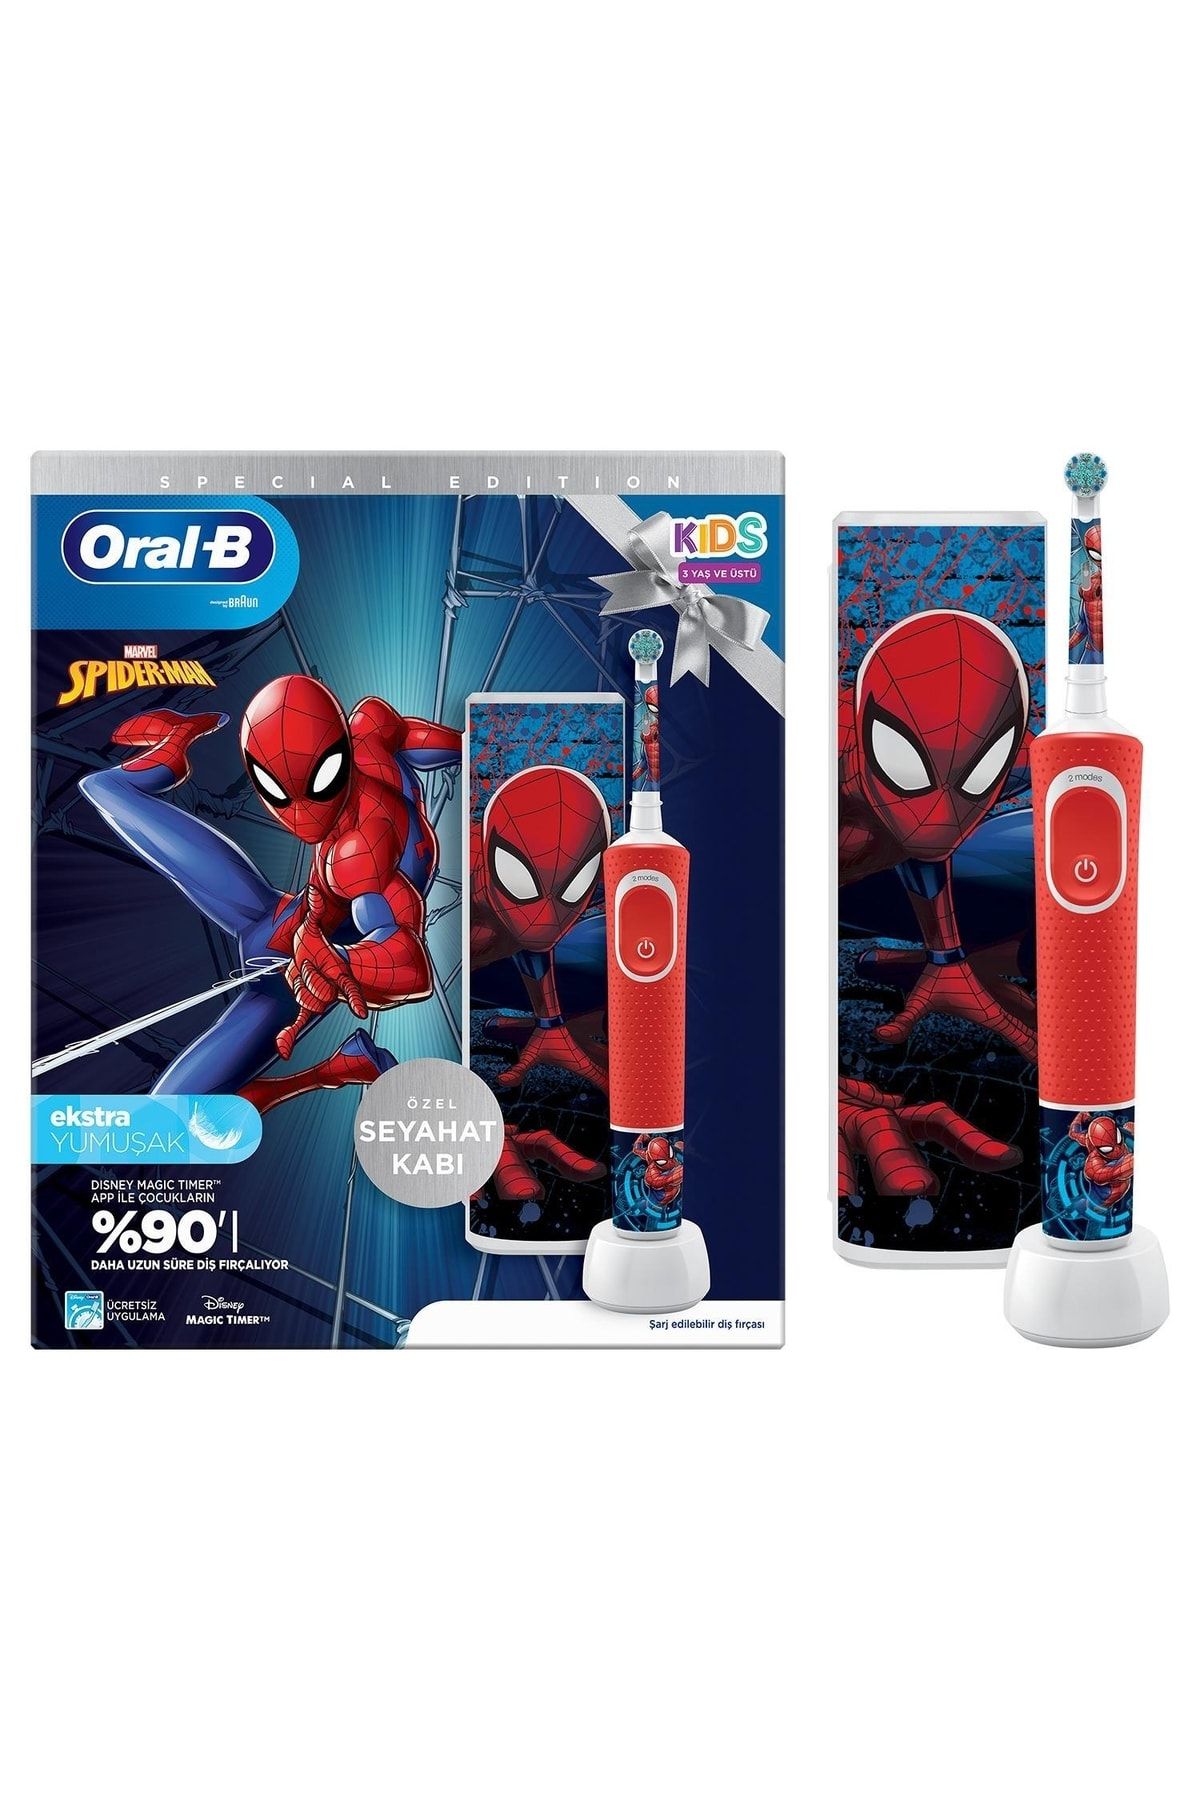 Oral-B D100 Vitality Spiderman Özel Seri Çocuklar Için Ekstra Yumuşak Şarj Edilebilir Diş Fırçası +